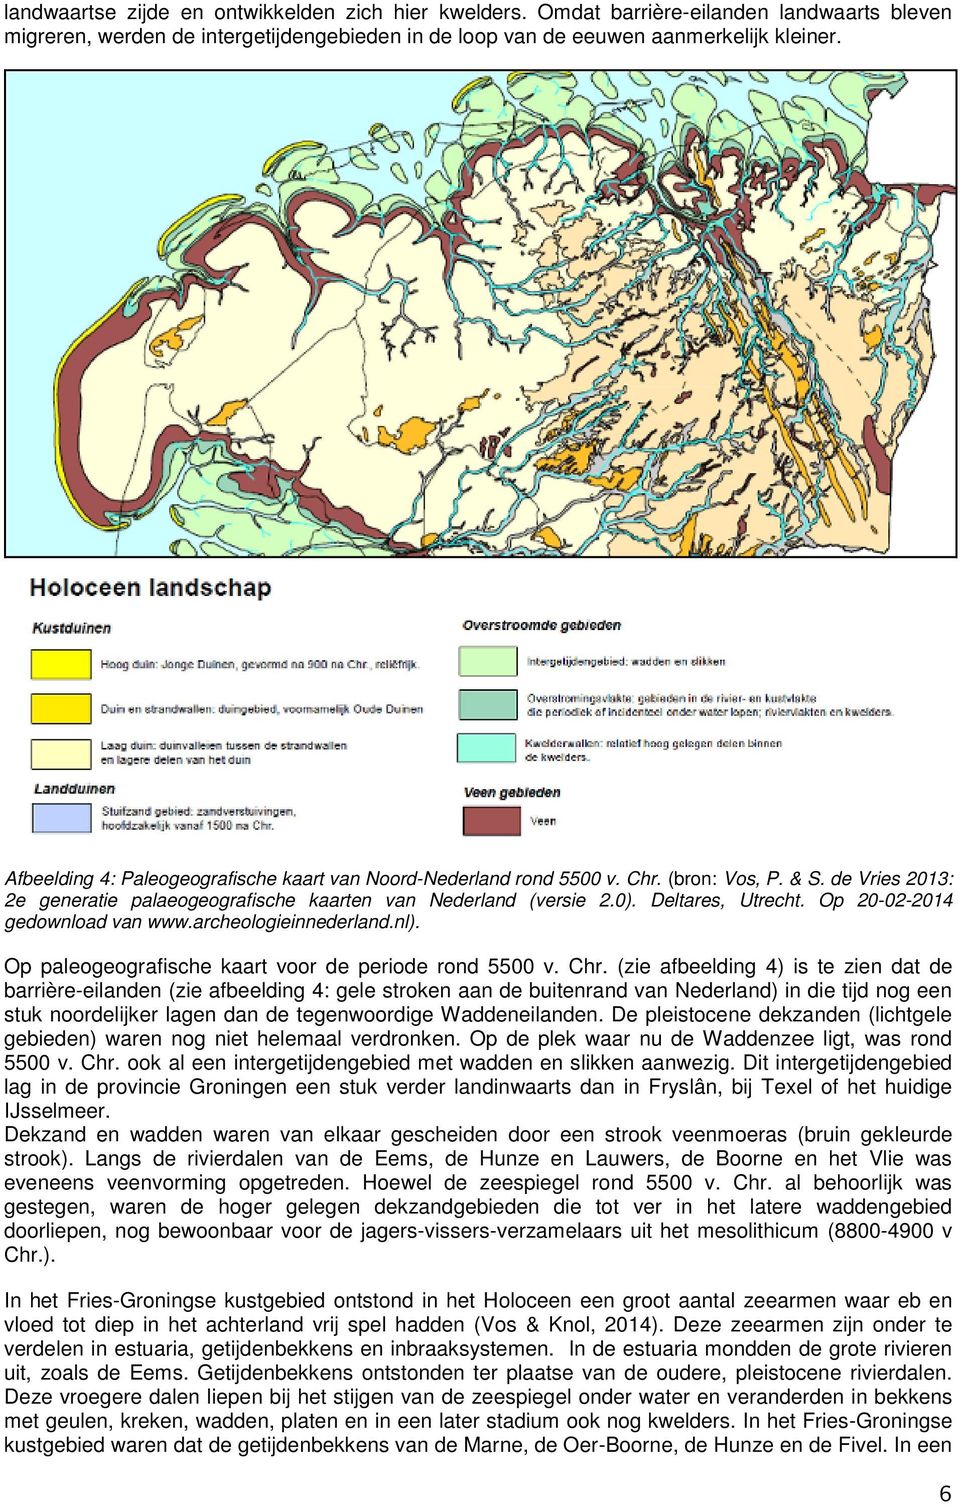 Op 20-02-2014 gedownload van www.archeologieinnederland.nl). Op paleogeografische kaart voor de periode rond 5500 v. Chr.